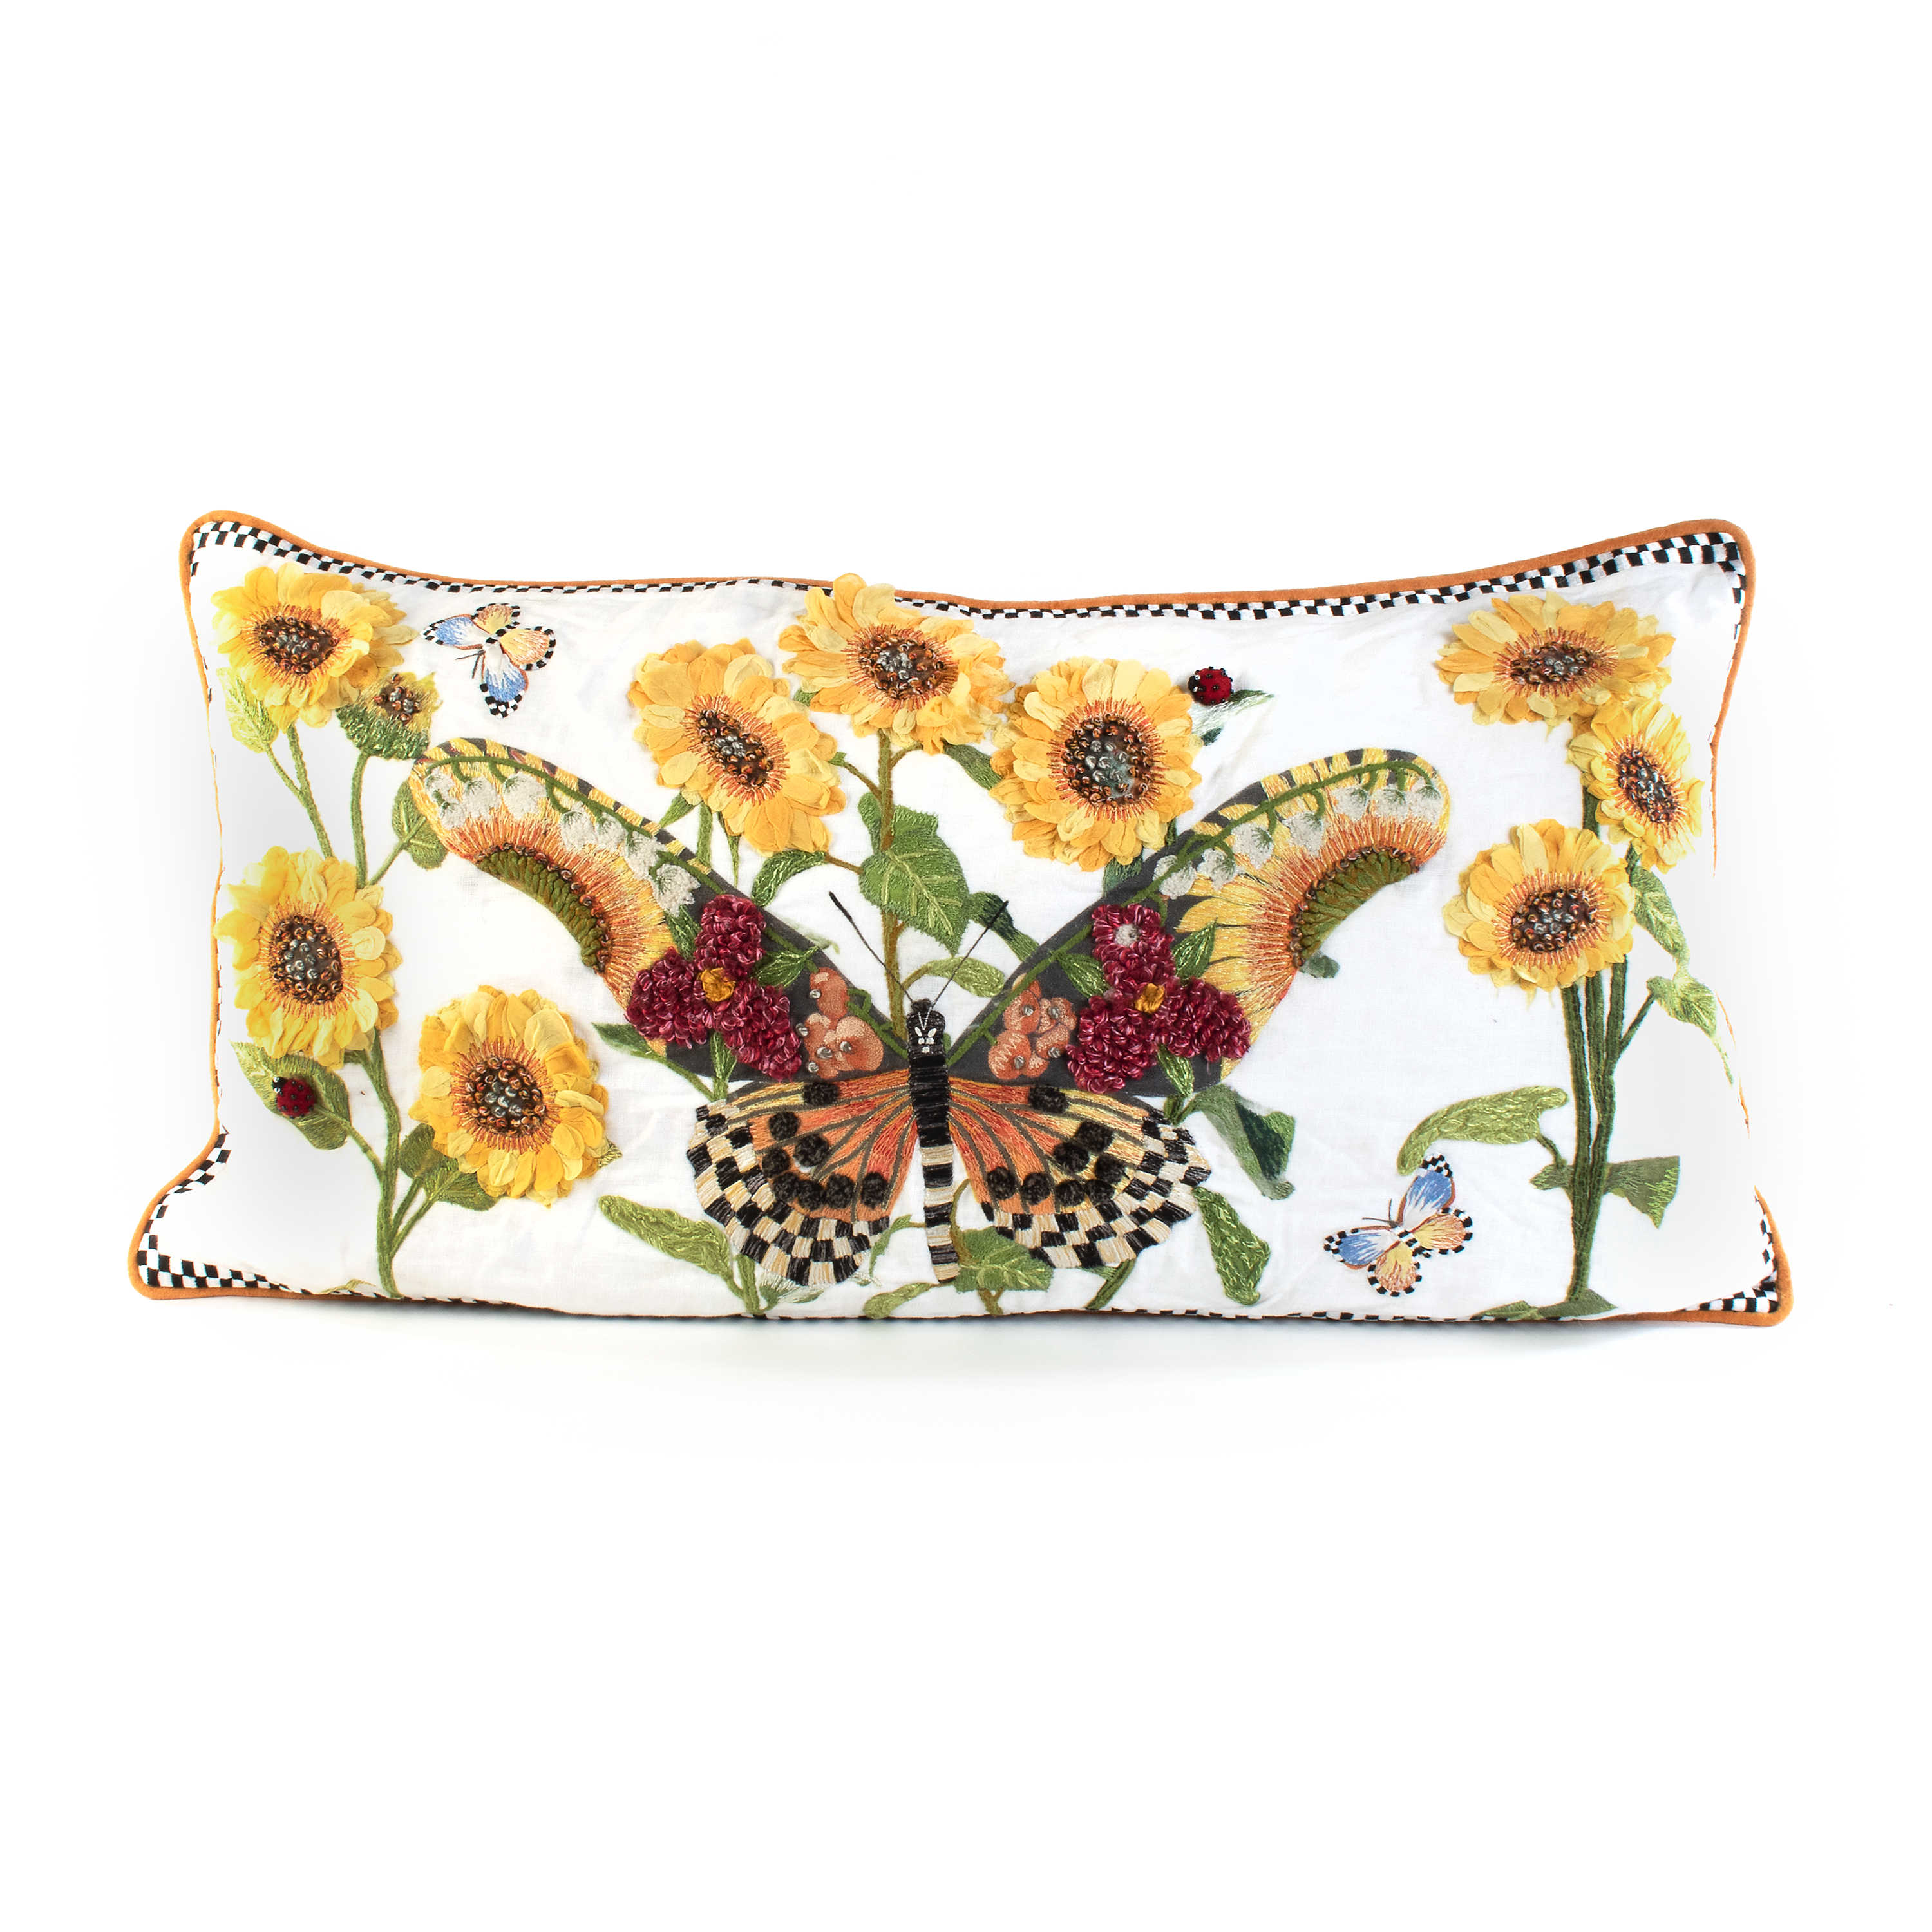 Monarch Butterfly Lumbar Pillow - White mackenzie-childs Panama 0